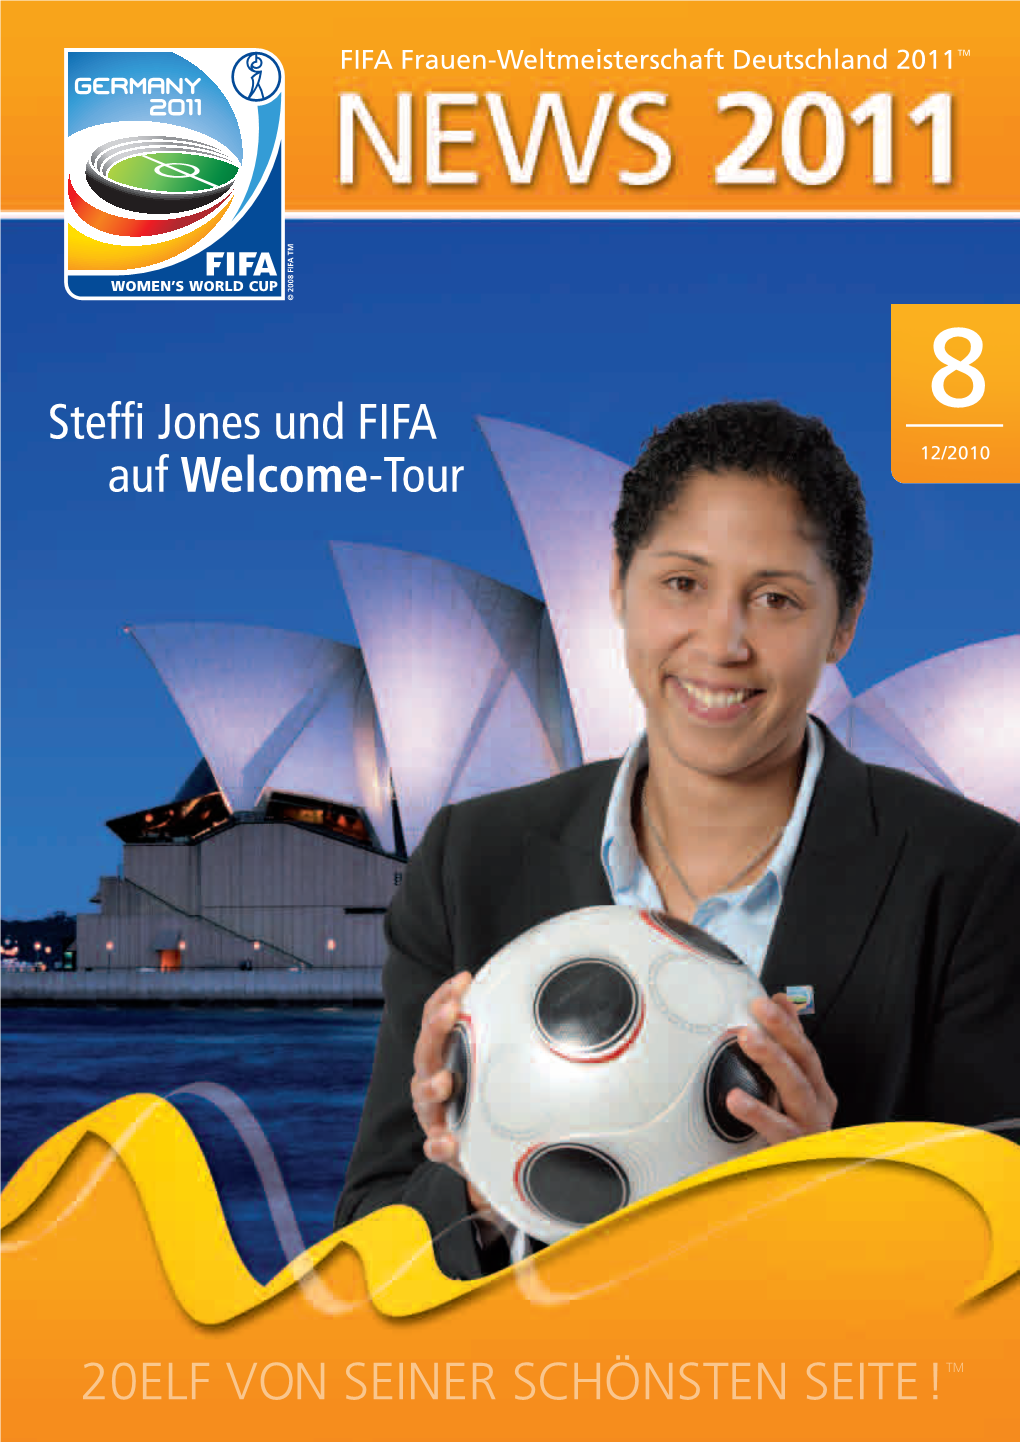 Steffi Jones Und FIFA Auf Welcome-Tour